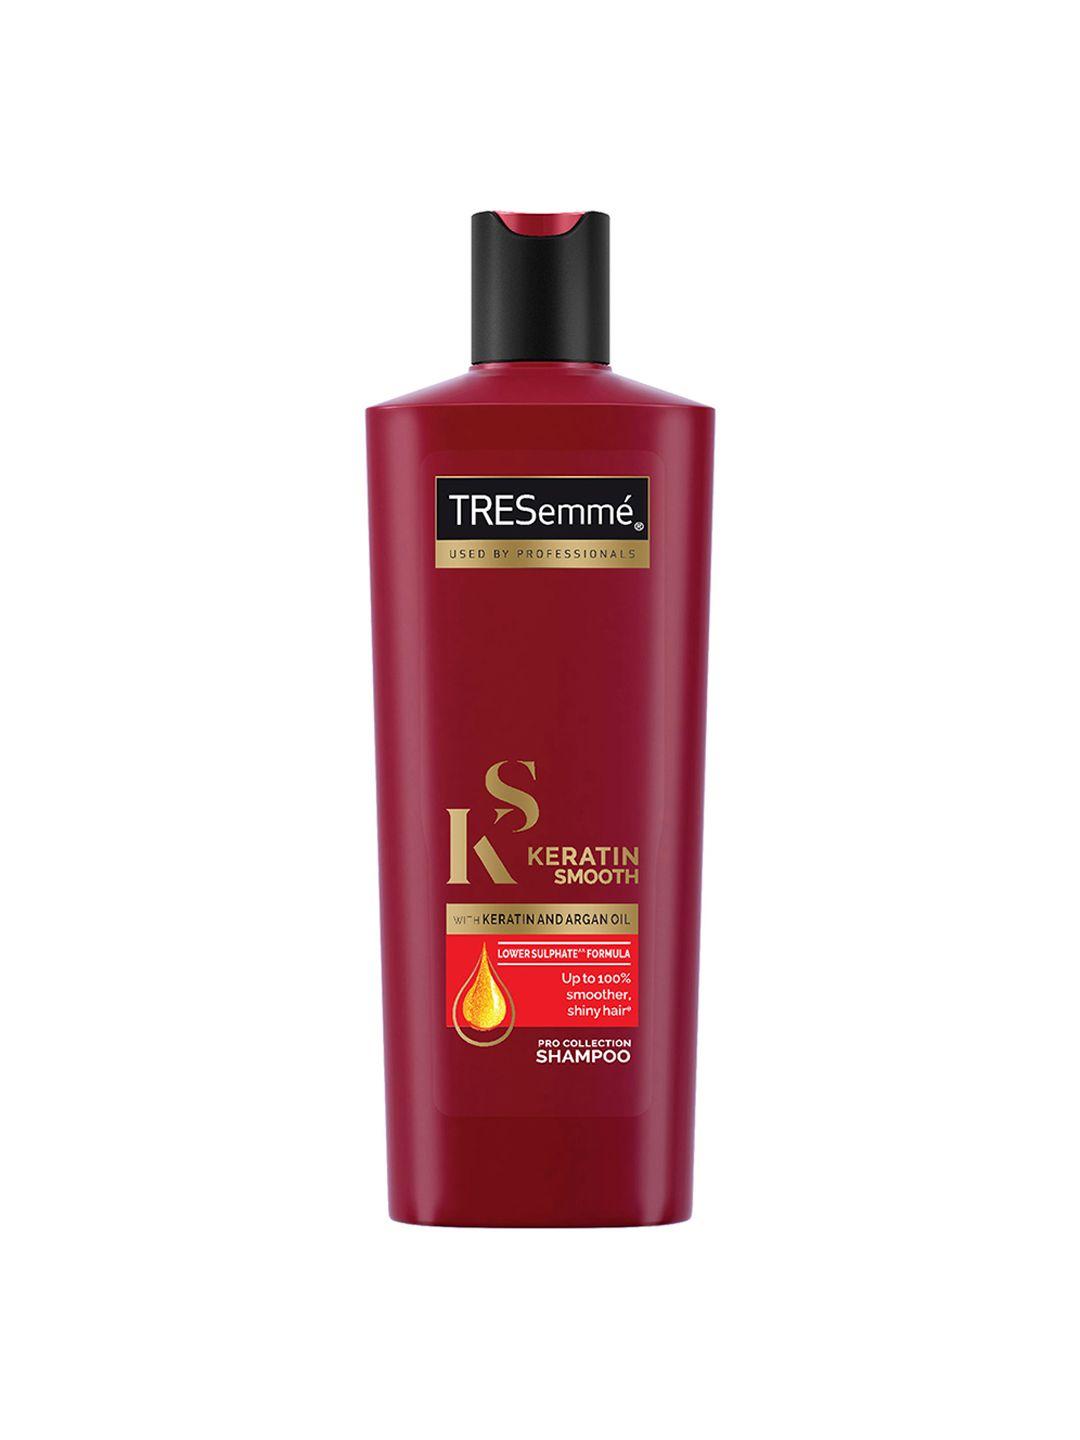 tresemme keratin smooth shampoo with keratin & argan oil for straight, shiny hair-340ml